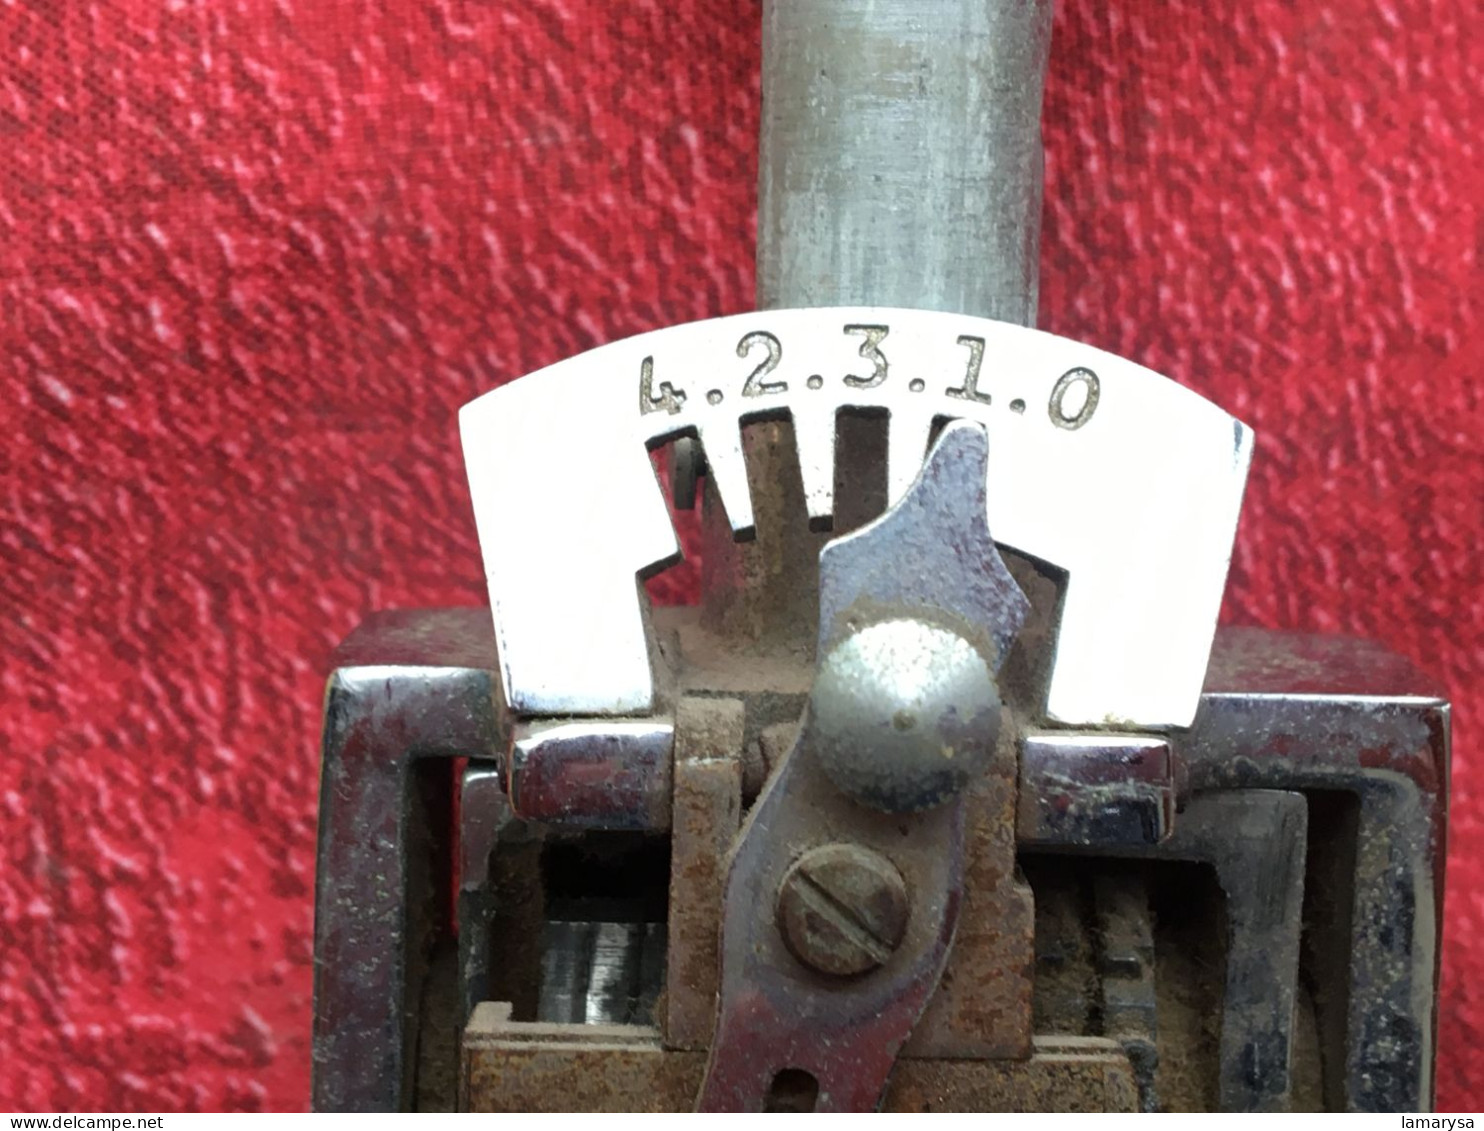 Timbre à Date En Métal Vintage, Machine à Numéroter, Timbre à Encre Chiffres Vieux Timbre Polygraphique,(Allemagne) - Seals